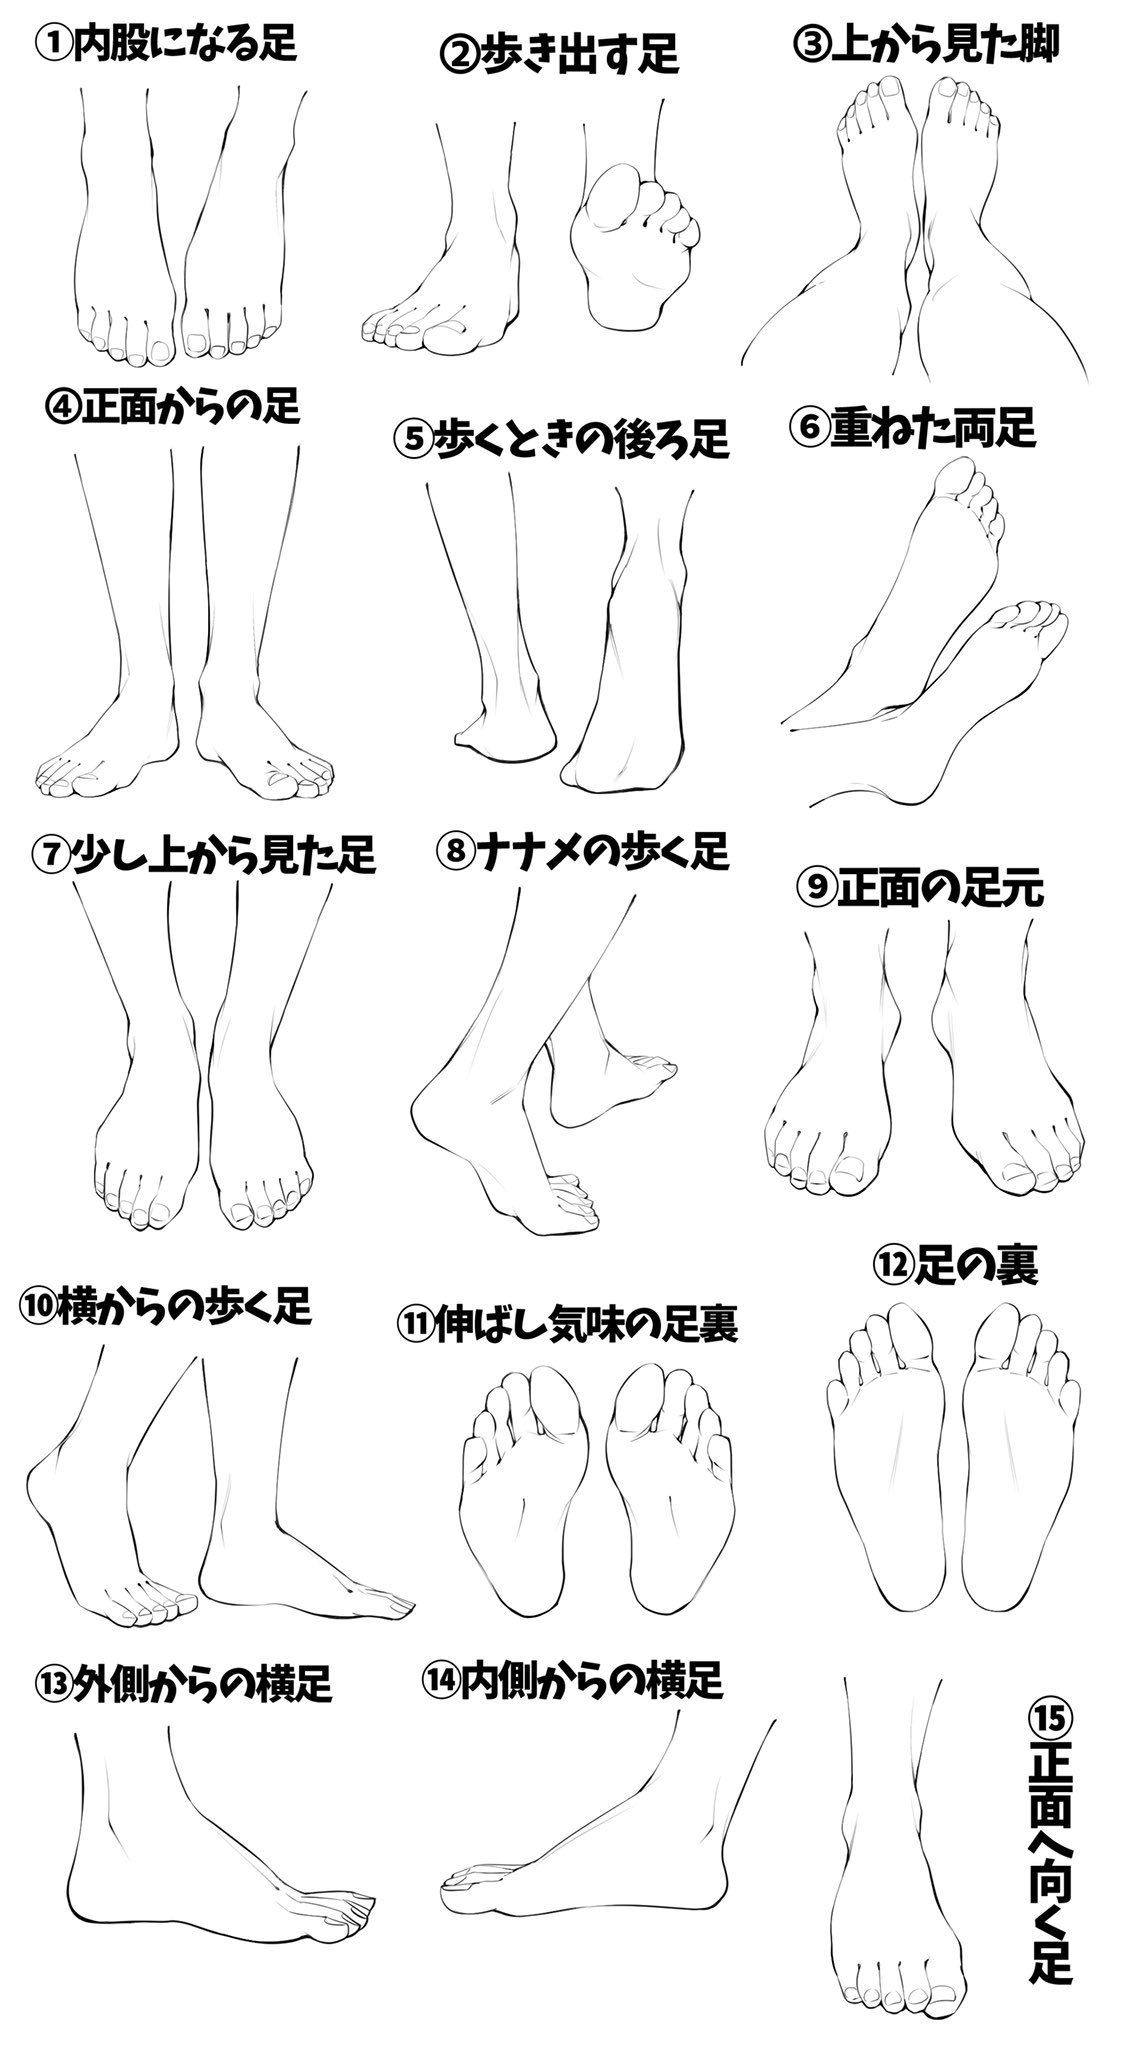 吉村拓也 イラスト講座 いろんな足を模写練習できるように 足パターン模写表 を作りました 線画タイプ と 肌色タイプ